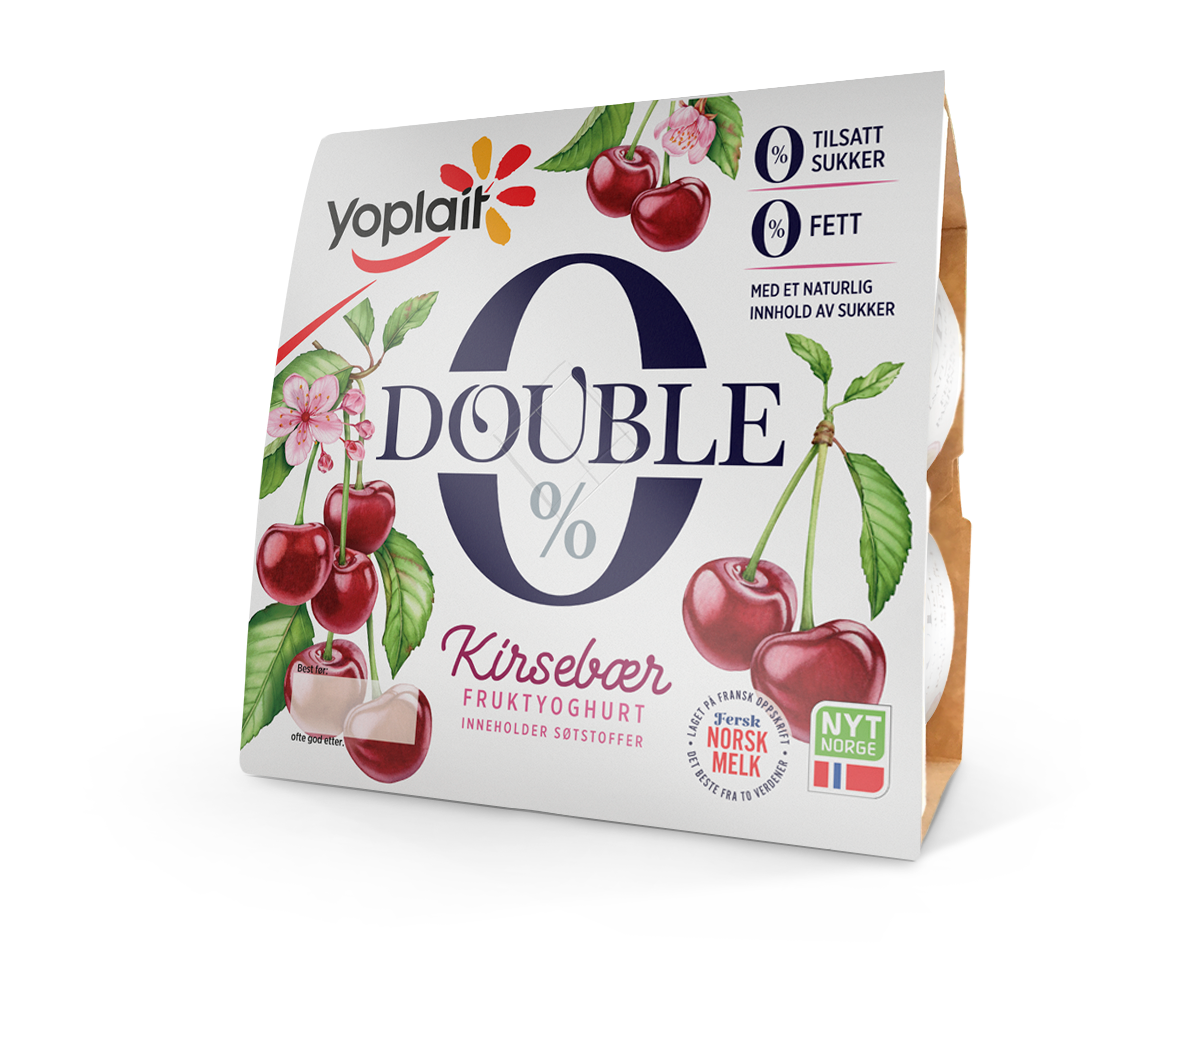 Double 0 Kirsebær